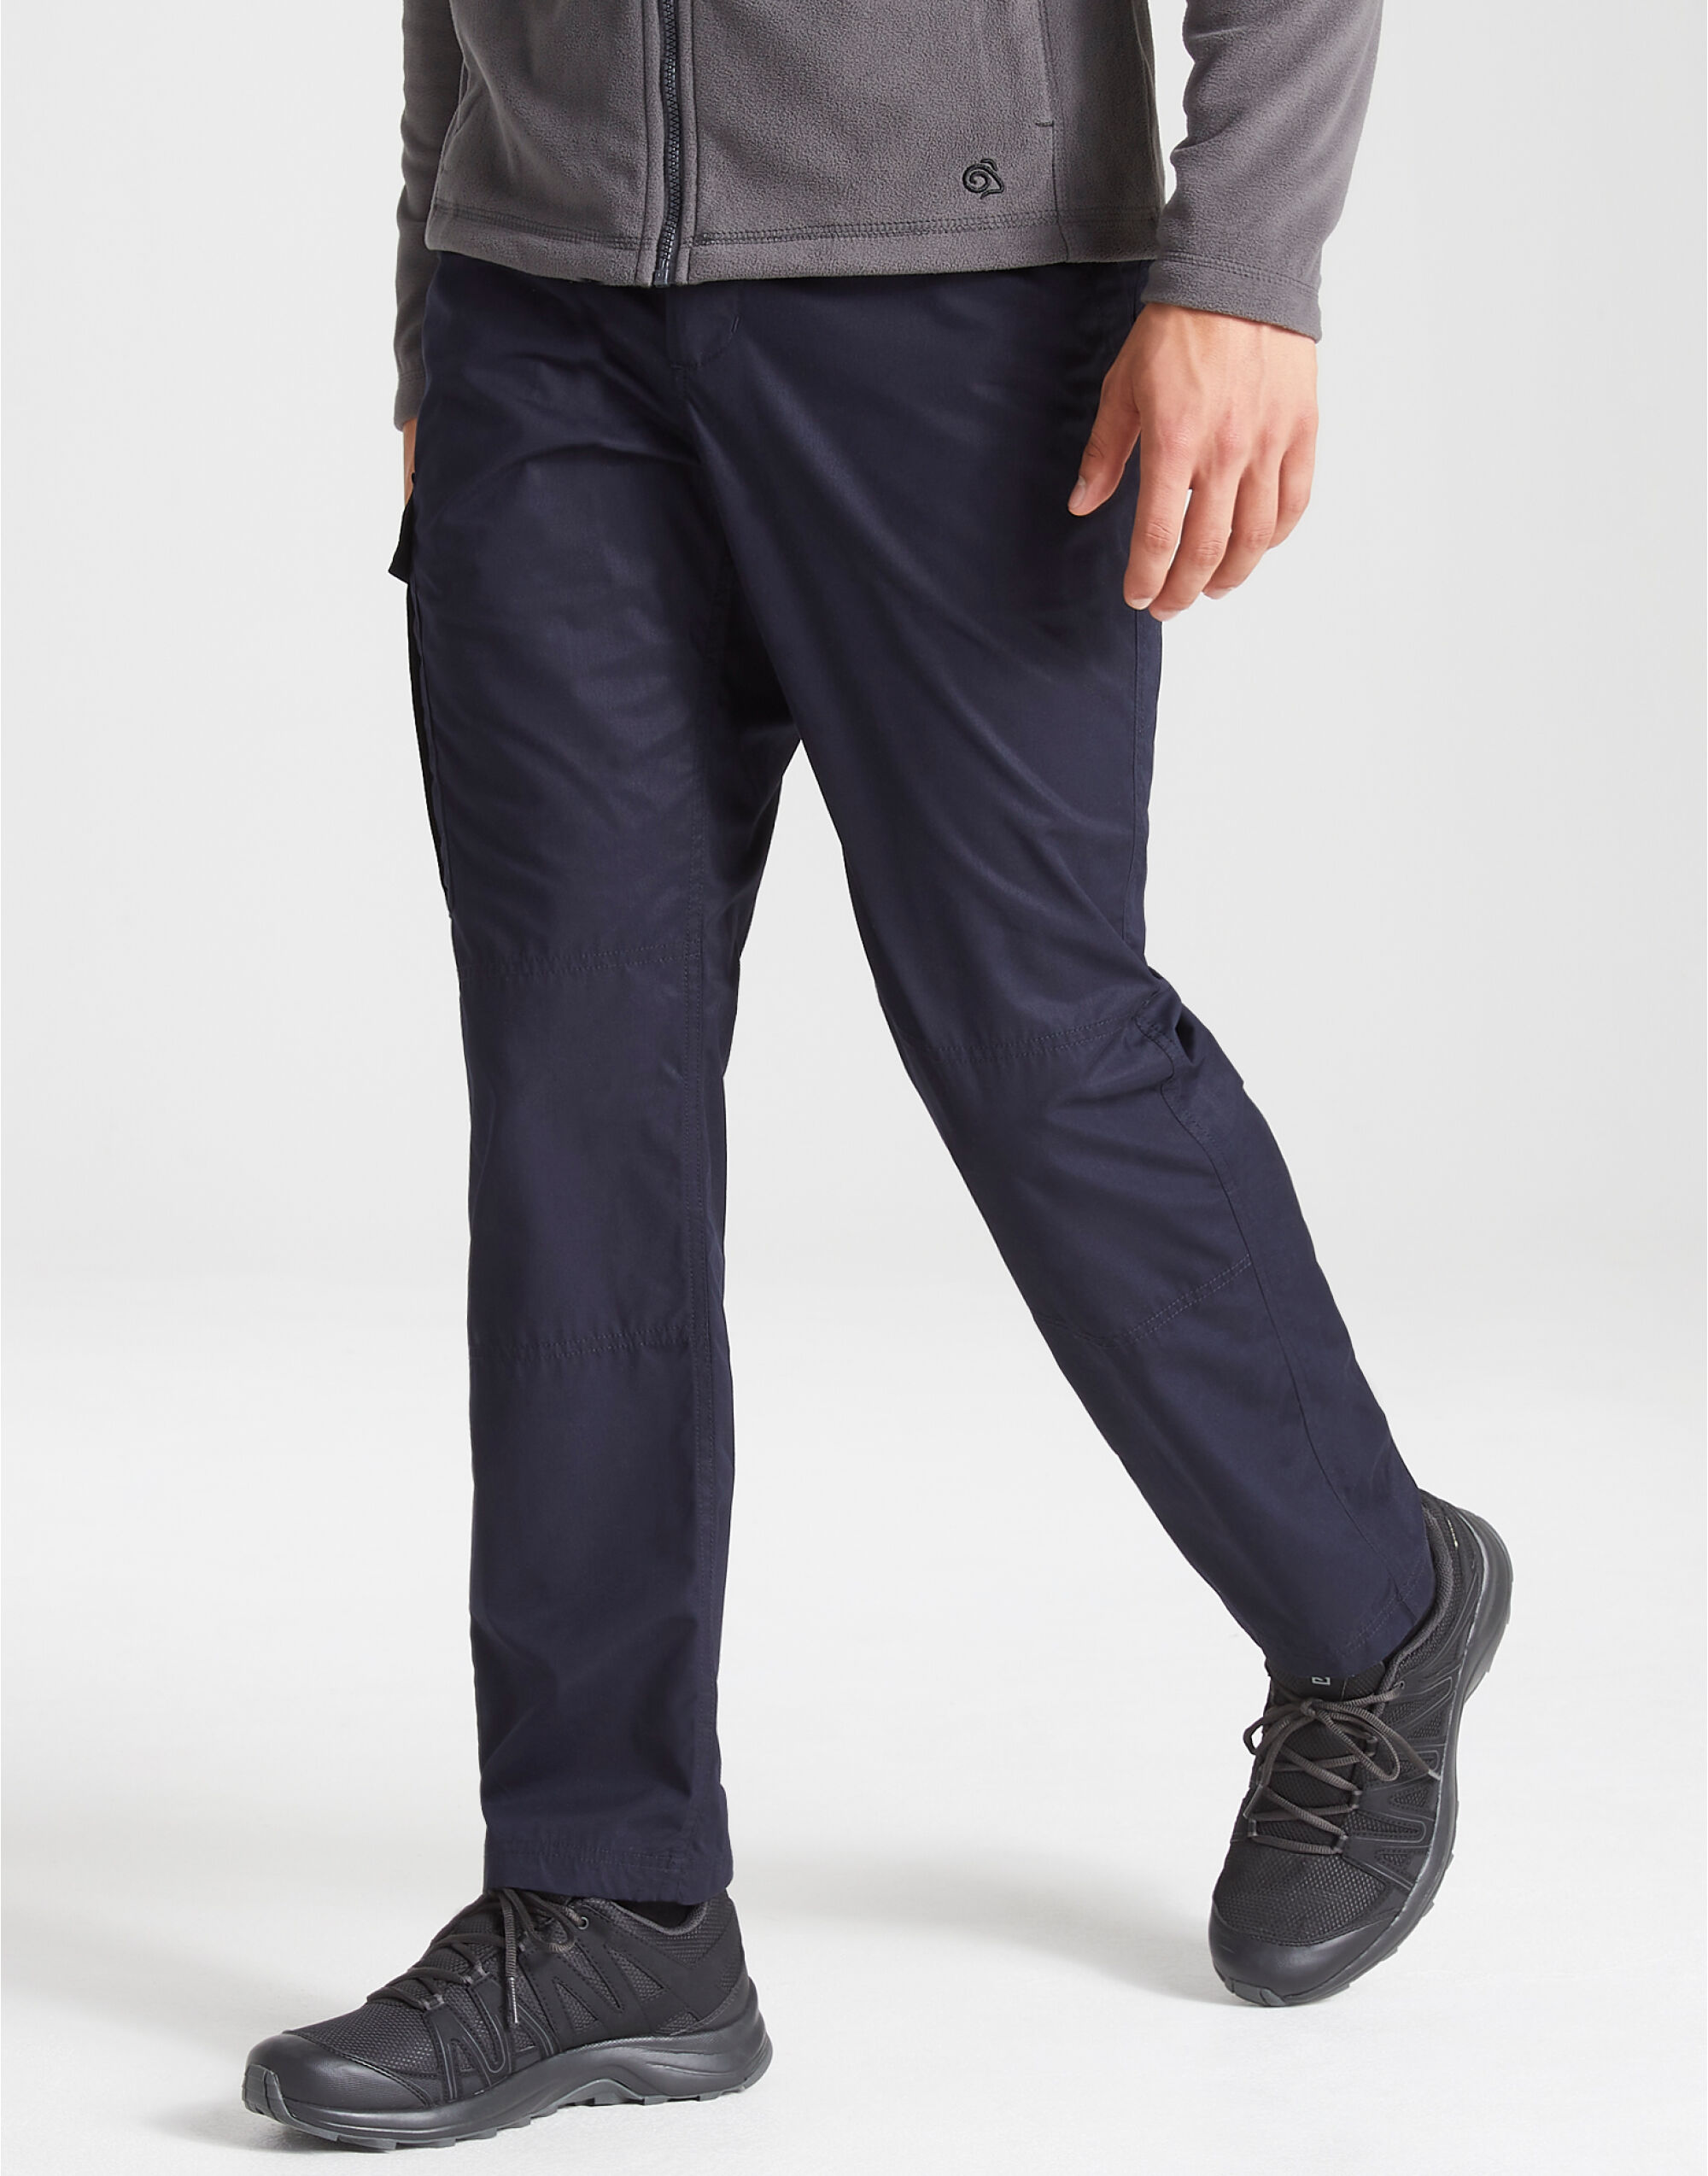 Men's Expert Kiwi Tailored Trousers (Short)